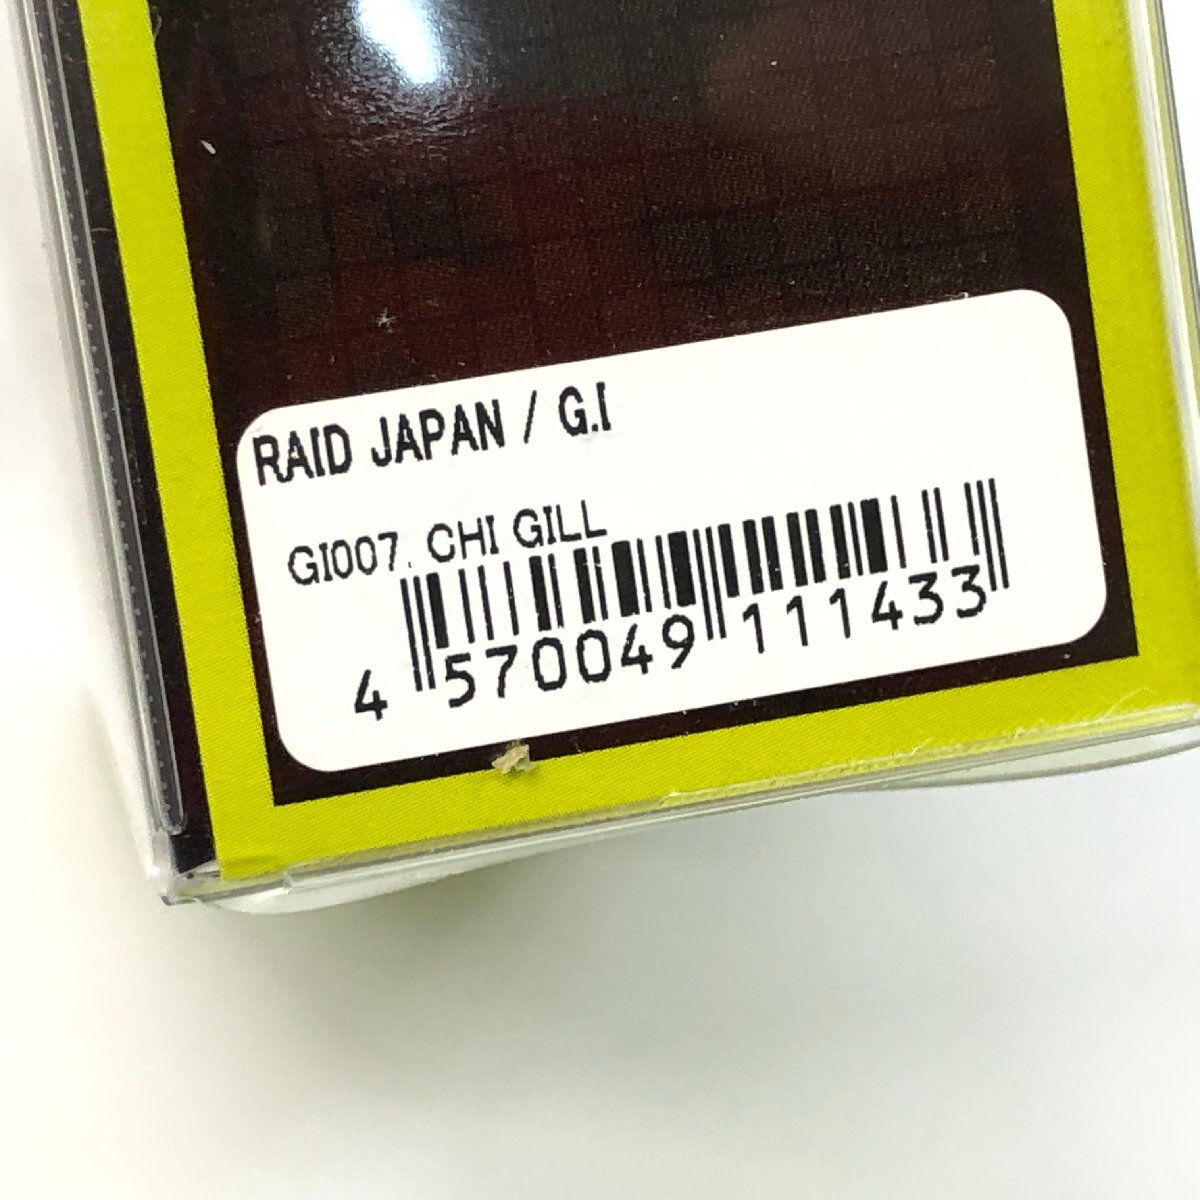 K【未使用】レイドジャパン GI グラヴィティインパクト #GI007 CHI GILL ジョイントベイト | RAID JAPAN G.I バス釣り ルアーの画像3